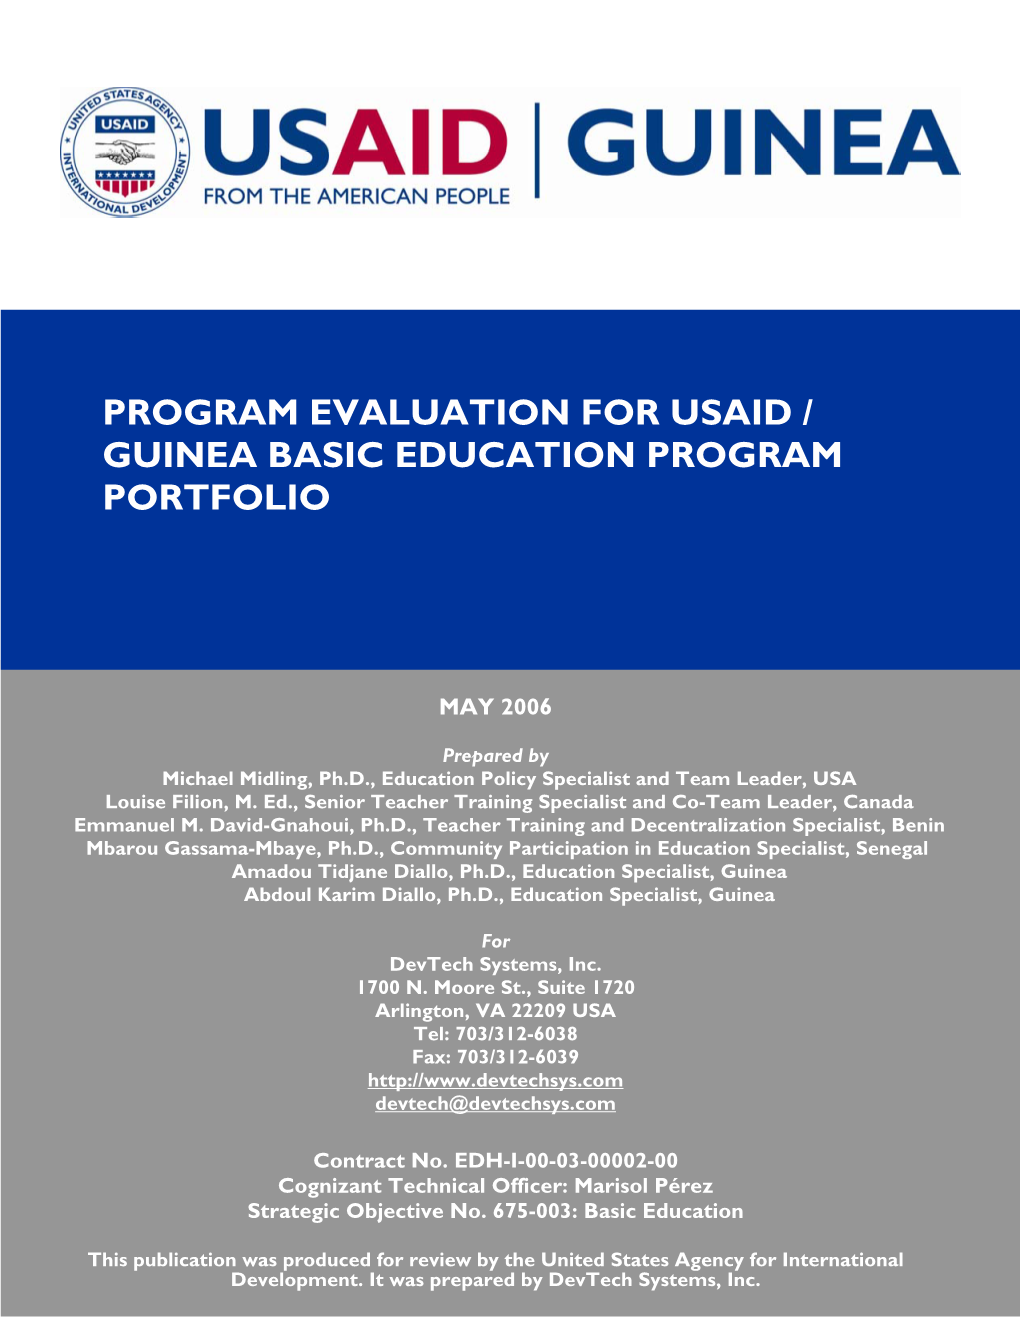 Program Evaluation for Usaid / Guinea Basic Education Program Portfolio